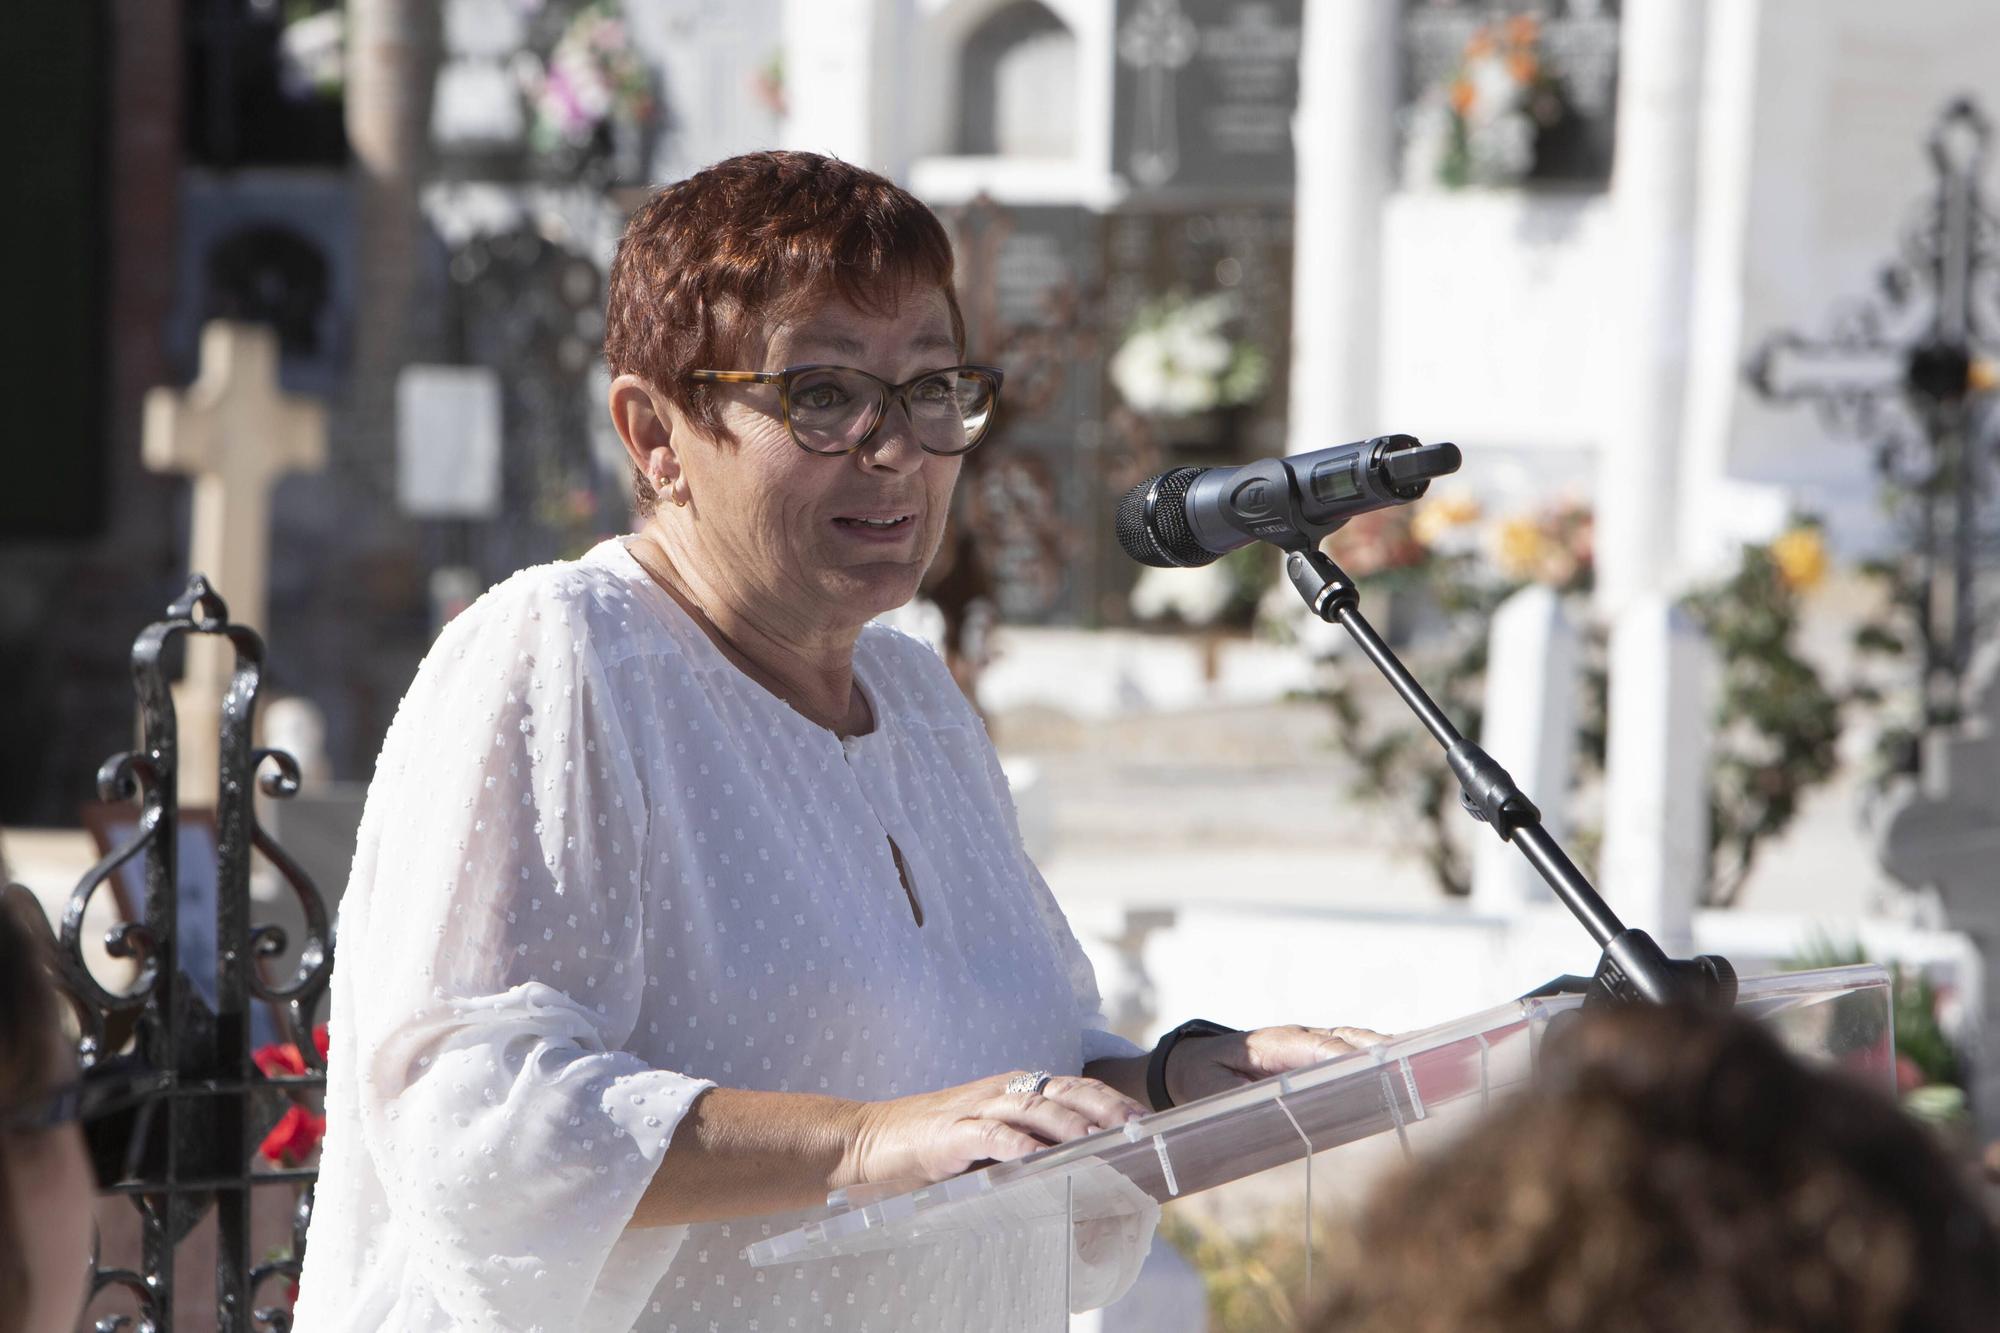 Memorial en recuerdo de las víctimas del franquismo en Enguera